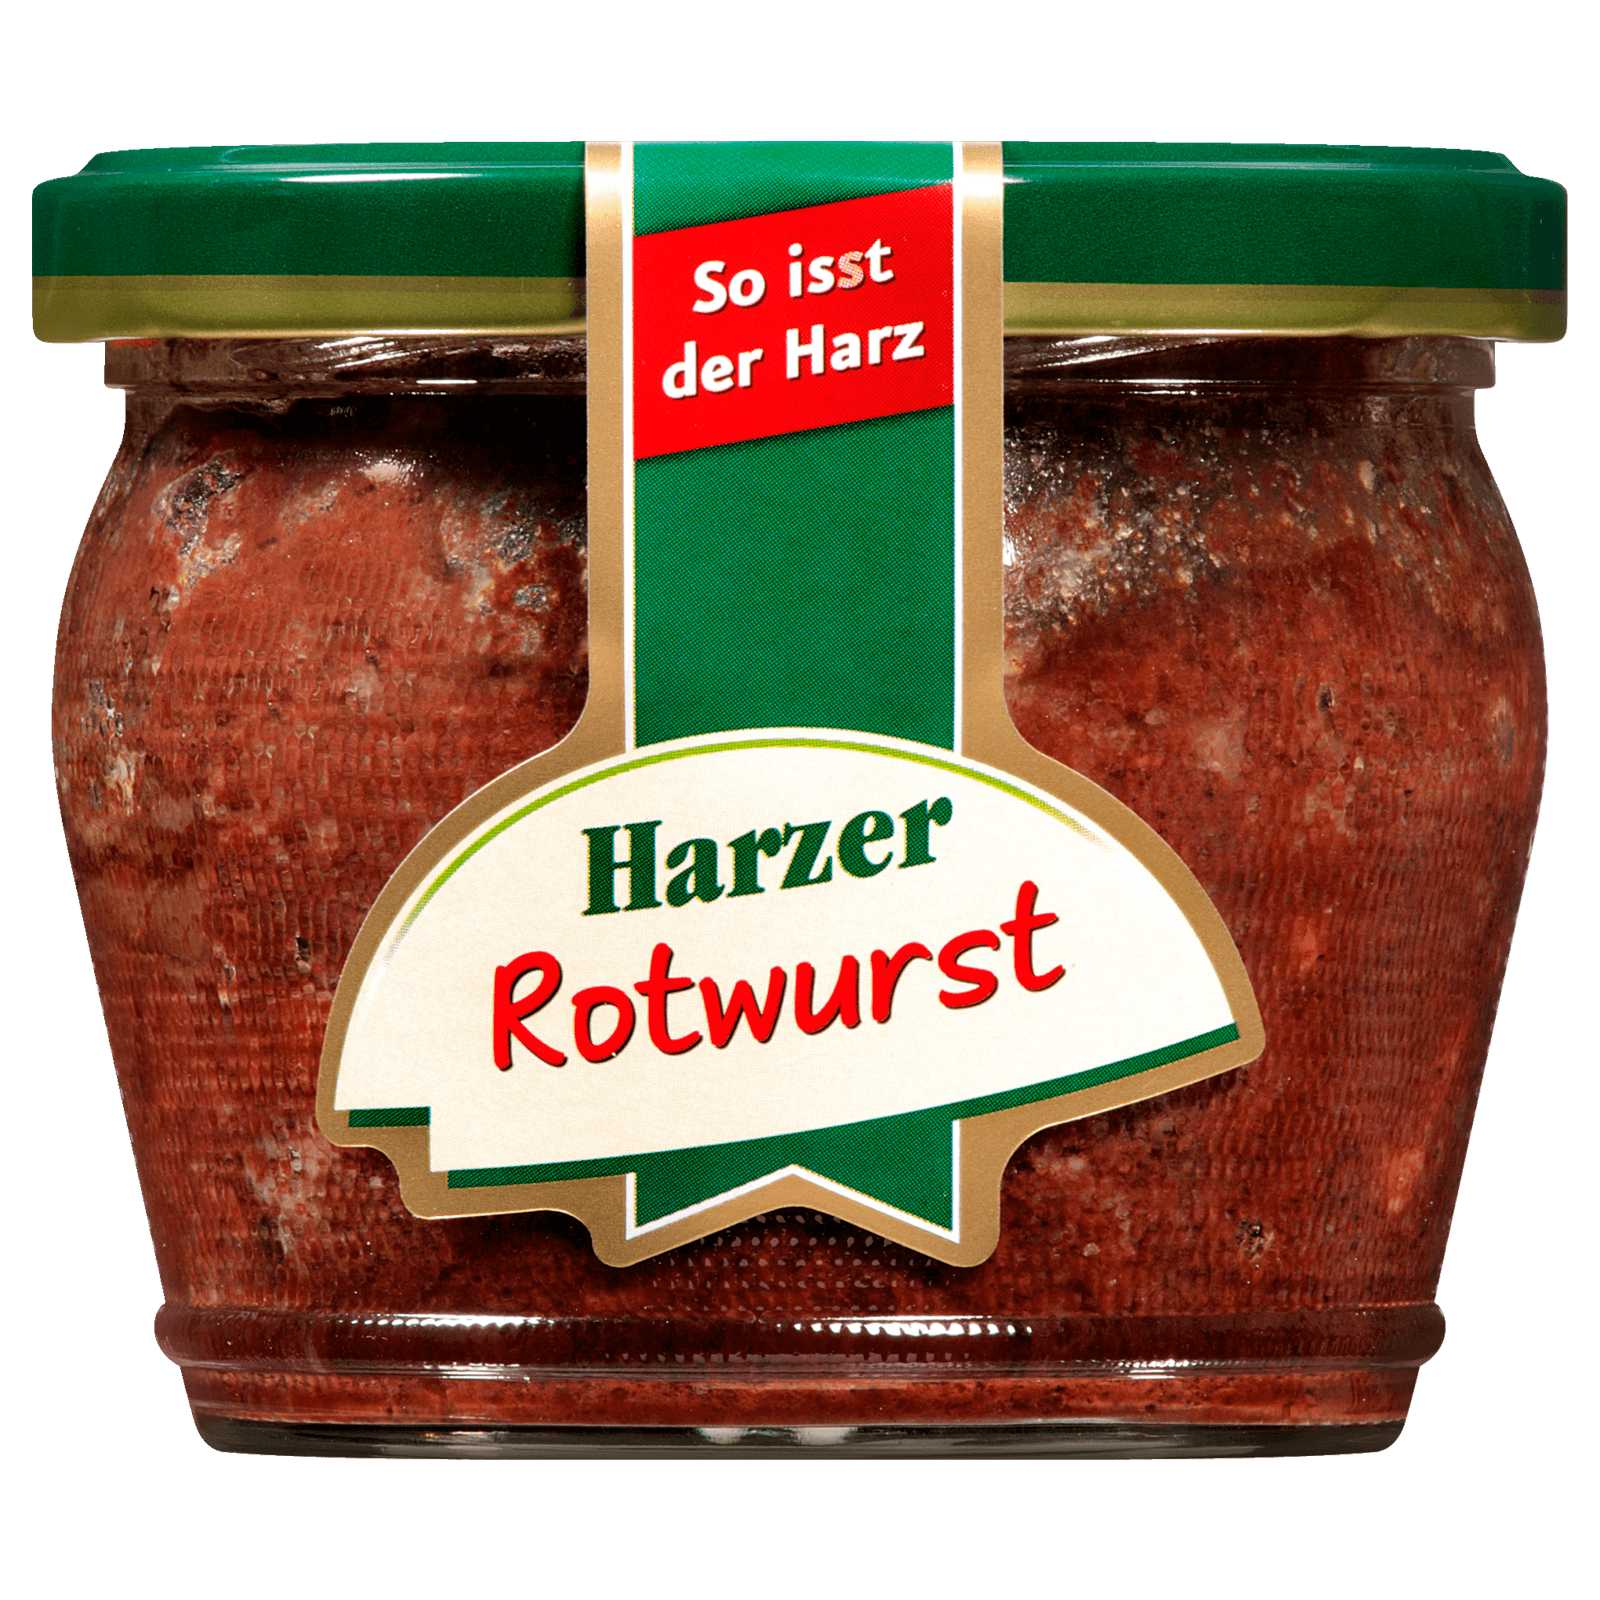 Keunecke Harzer Rotwurst 200g  für 2.69 EUR